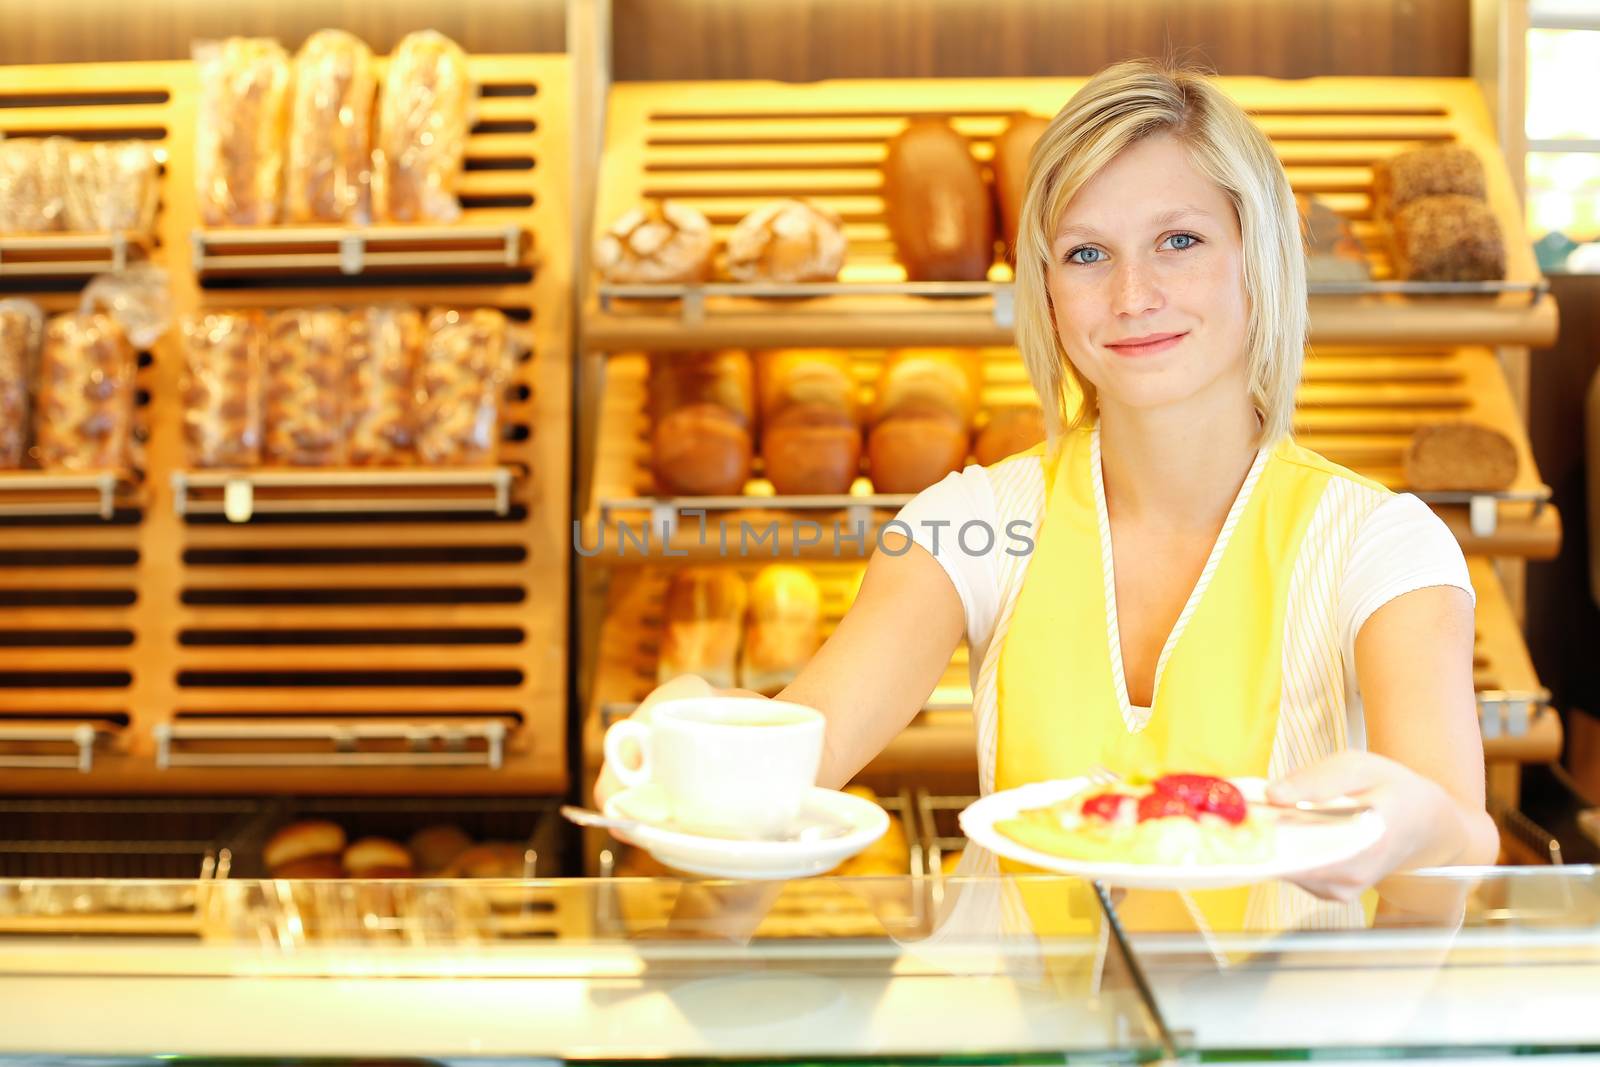 Shopkeeper in baker's shop preparing coffee and cake by ikonoklast_fotografie